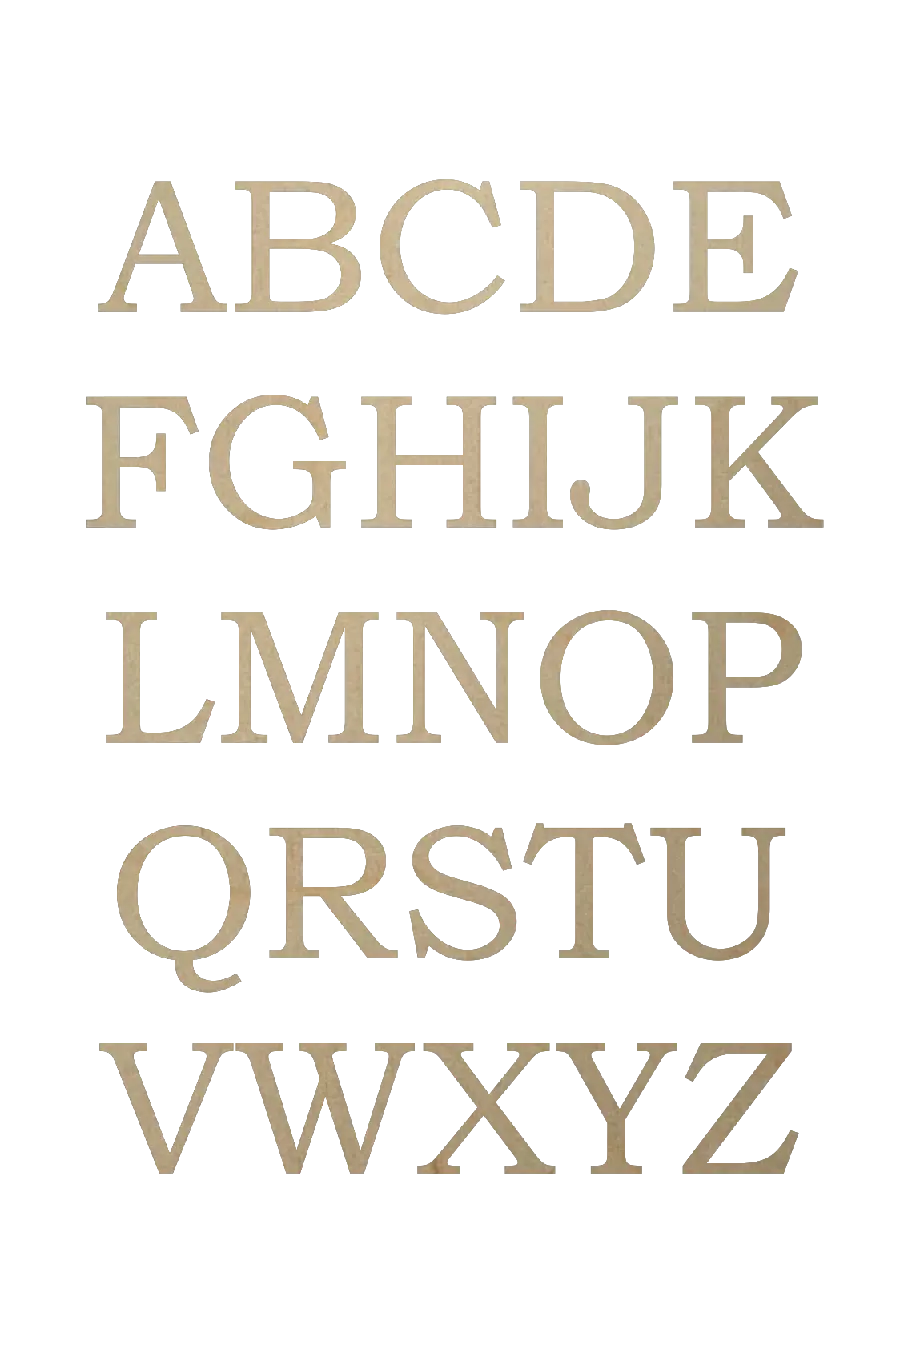 عکس حروف انگلیسی طراحی شده با چوب توسط نجار با فرمت PNG